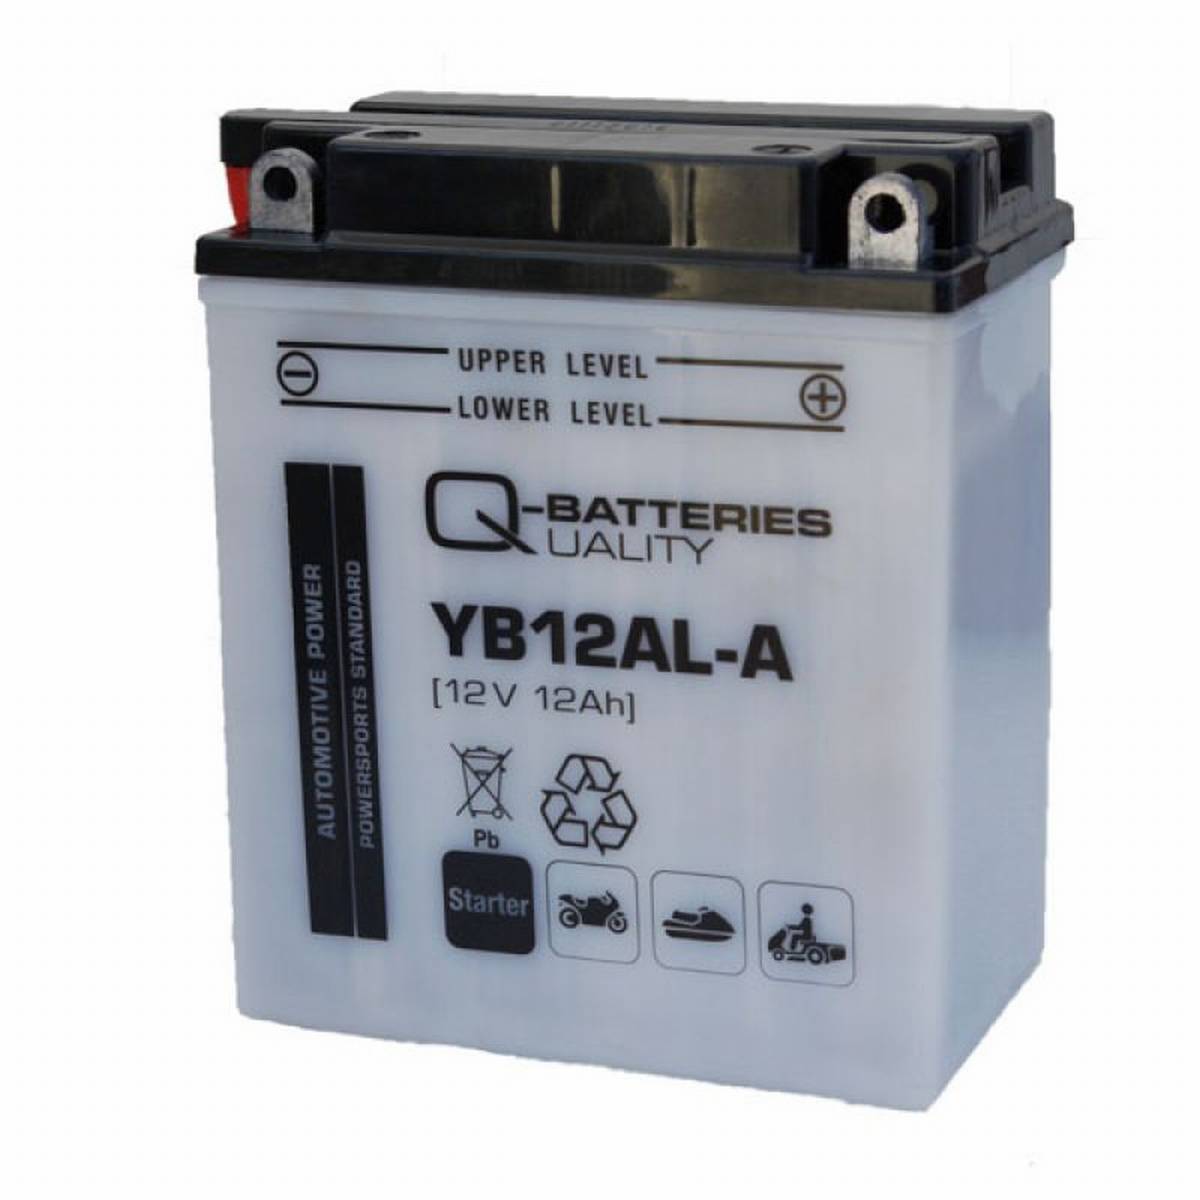 Q-Batteries Motorradbatterie YB12AL-A 51213 12V 12Ah 165A, Starterbatterie, Motorrad, Kfz, Batterien für